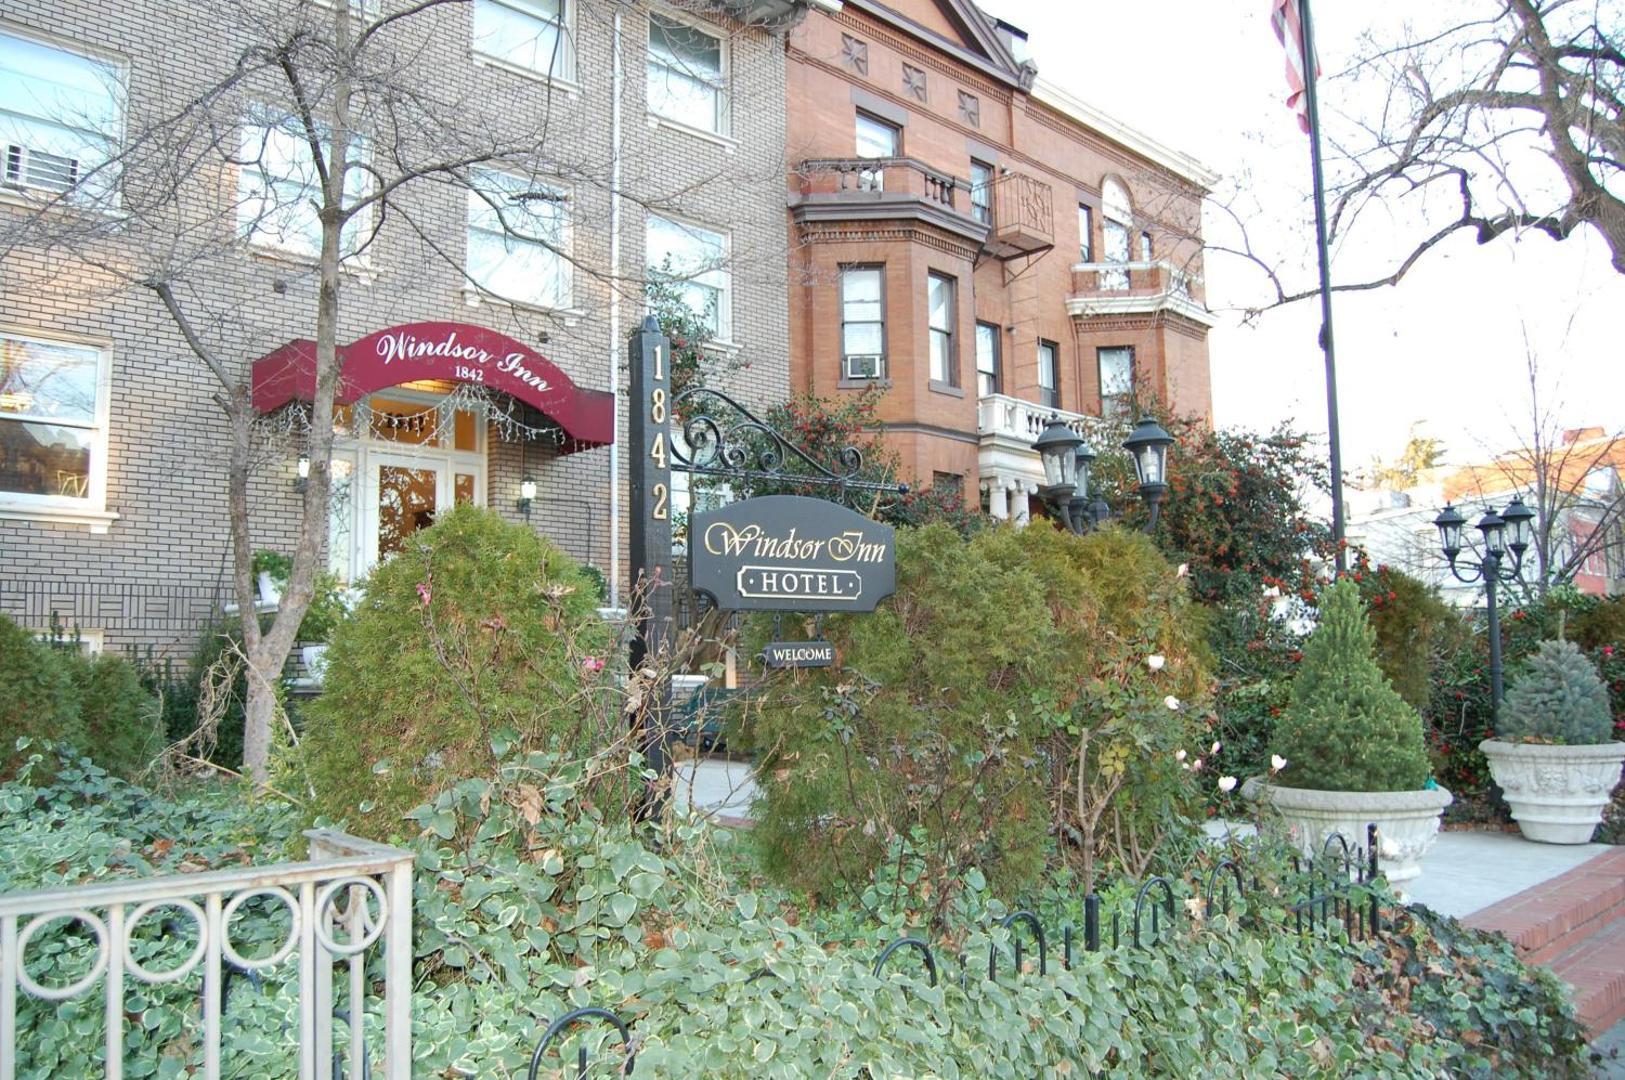 The Windsor Inn